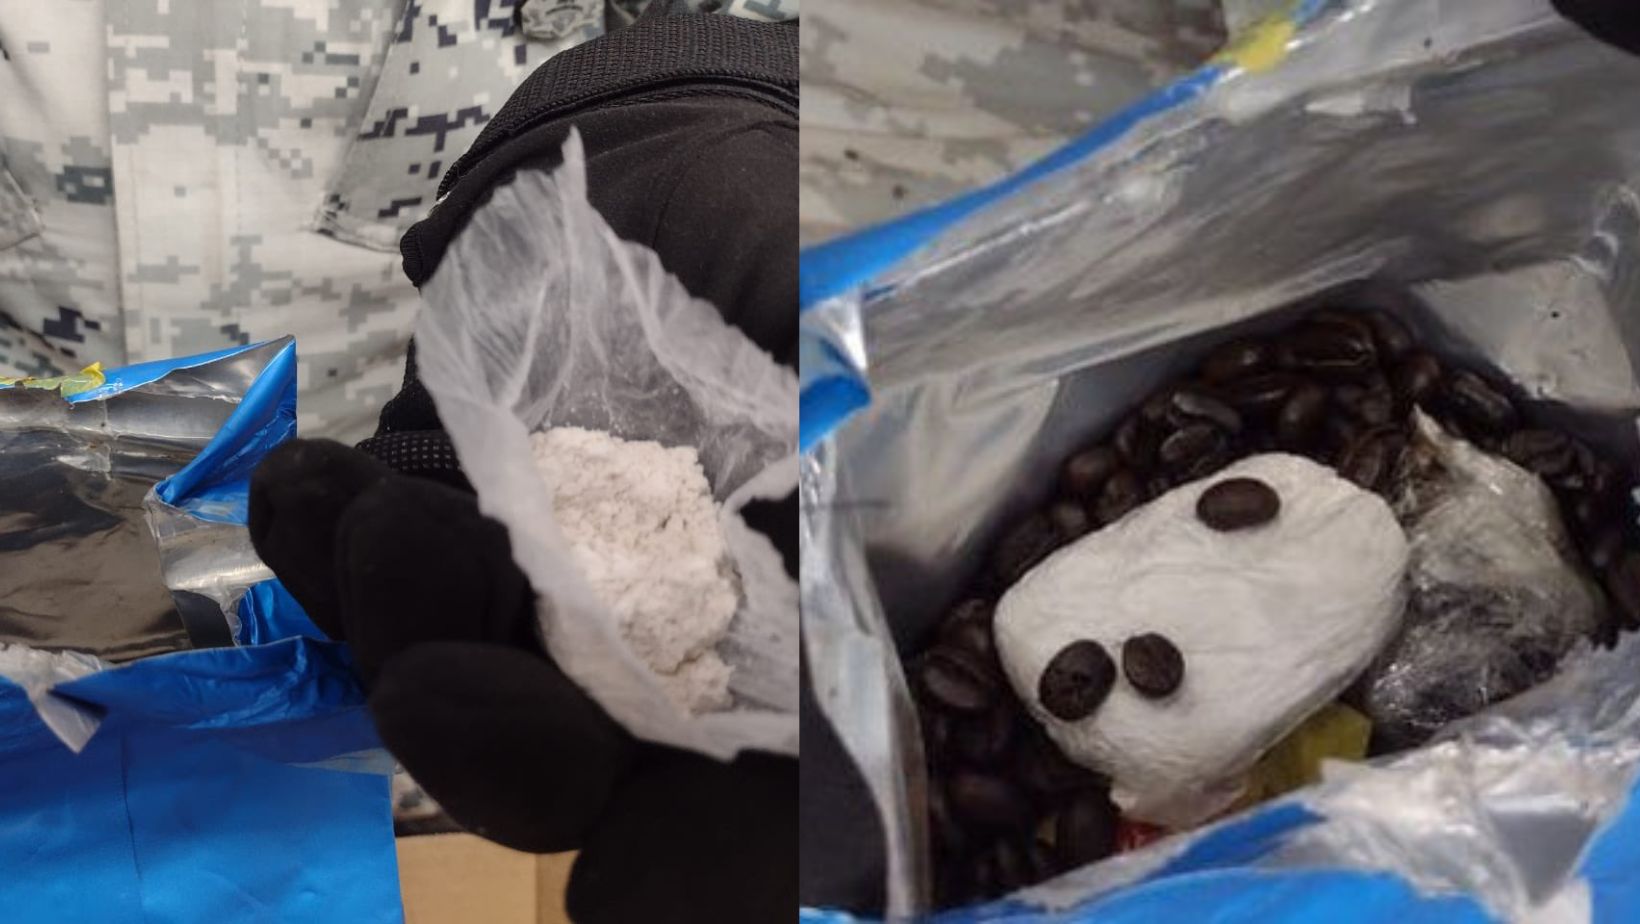 Guardia Nacional aseguró 19 envoltorios de heroína oculta en bolsas de café en Querétaro 